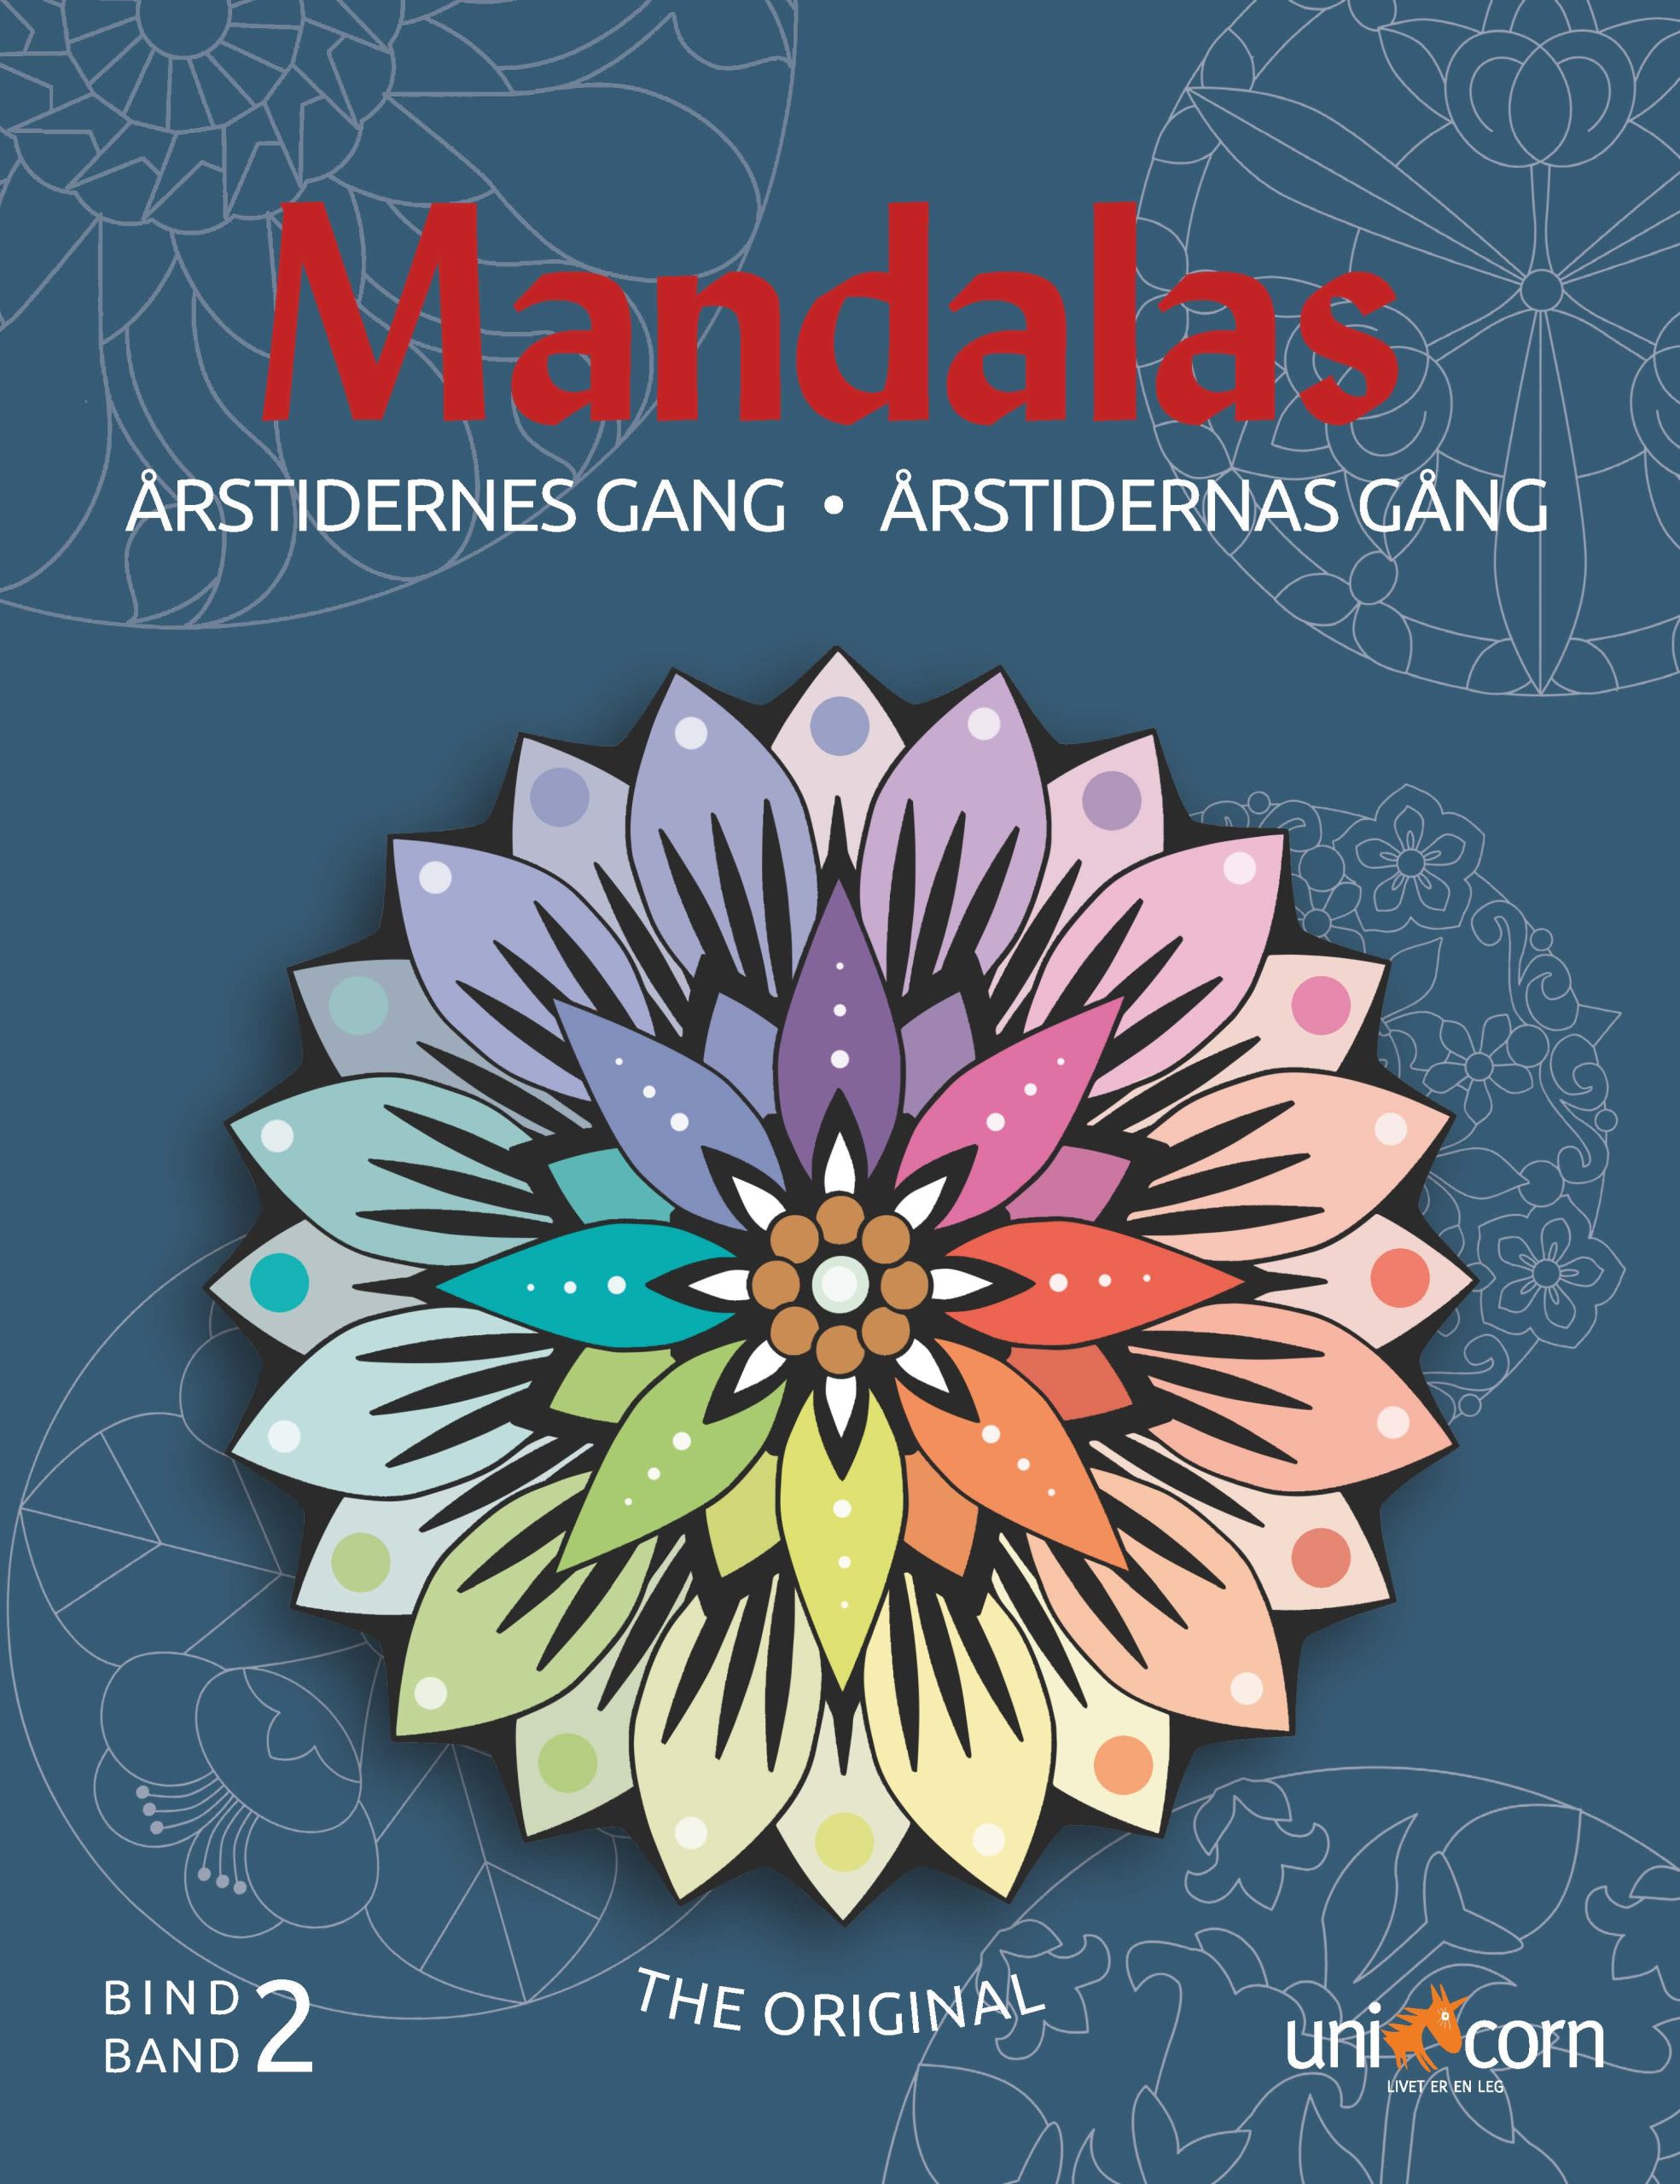 Årstidernes Gang med Mandalas BIND 2